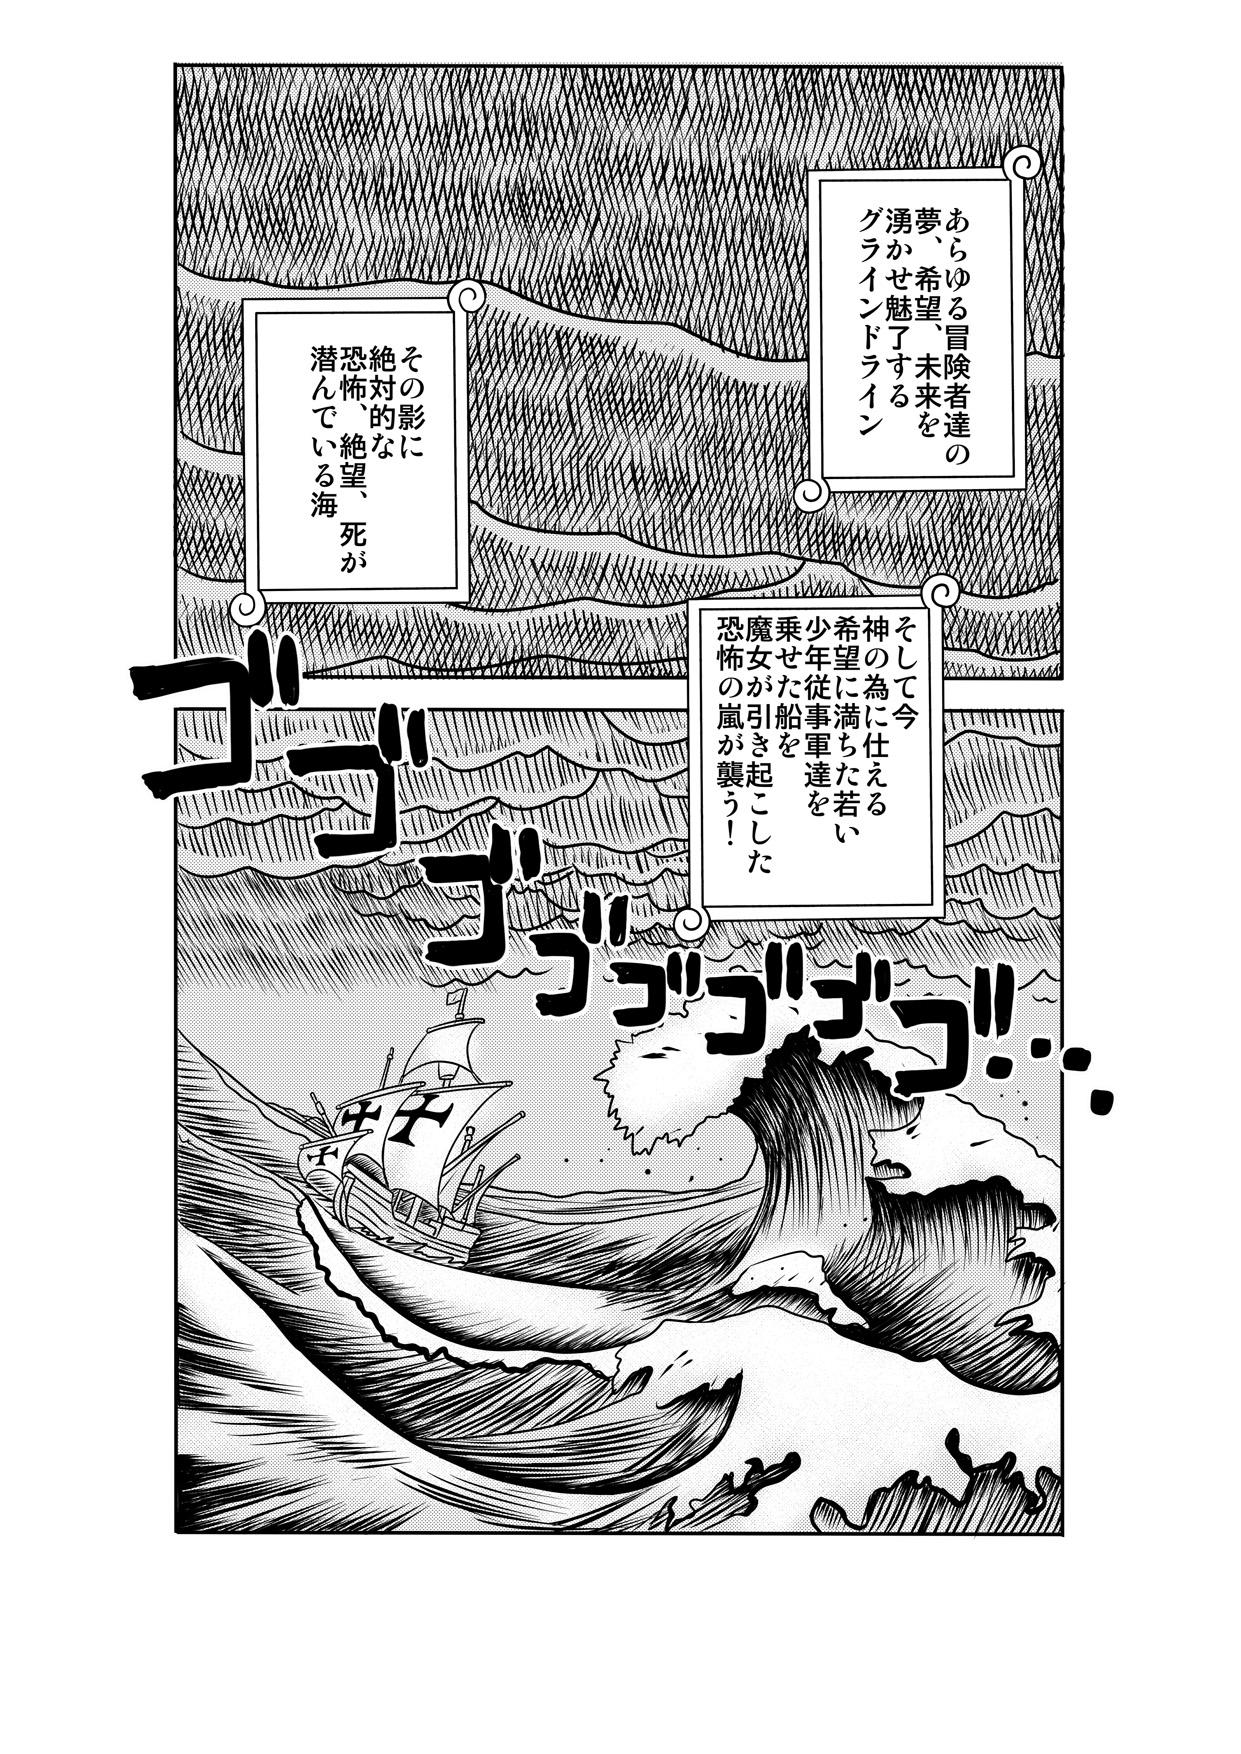 Culazo "Nukinuki no Mi" no Nouryokusha 2 - Seishounen Juujigun Hen - One piece Pau Grande - Page 2